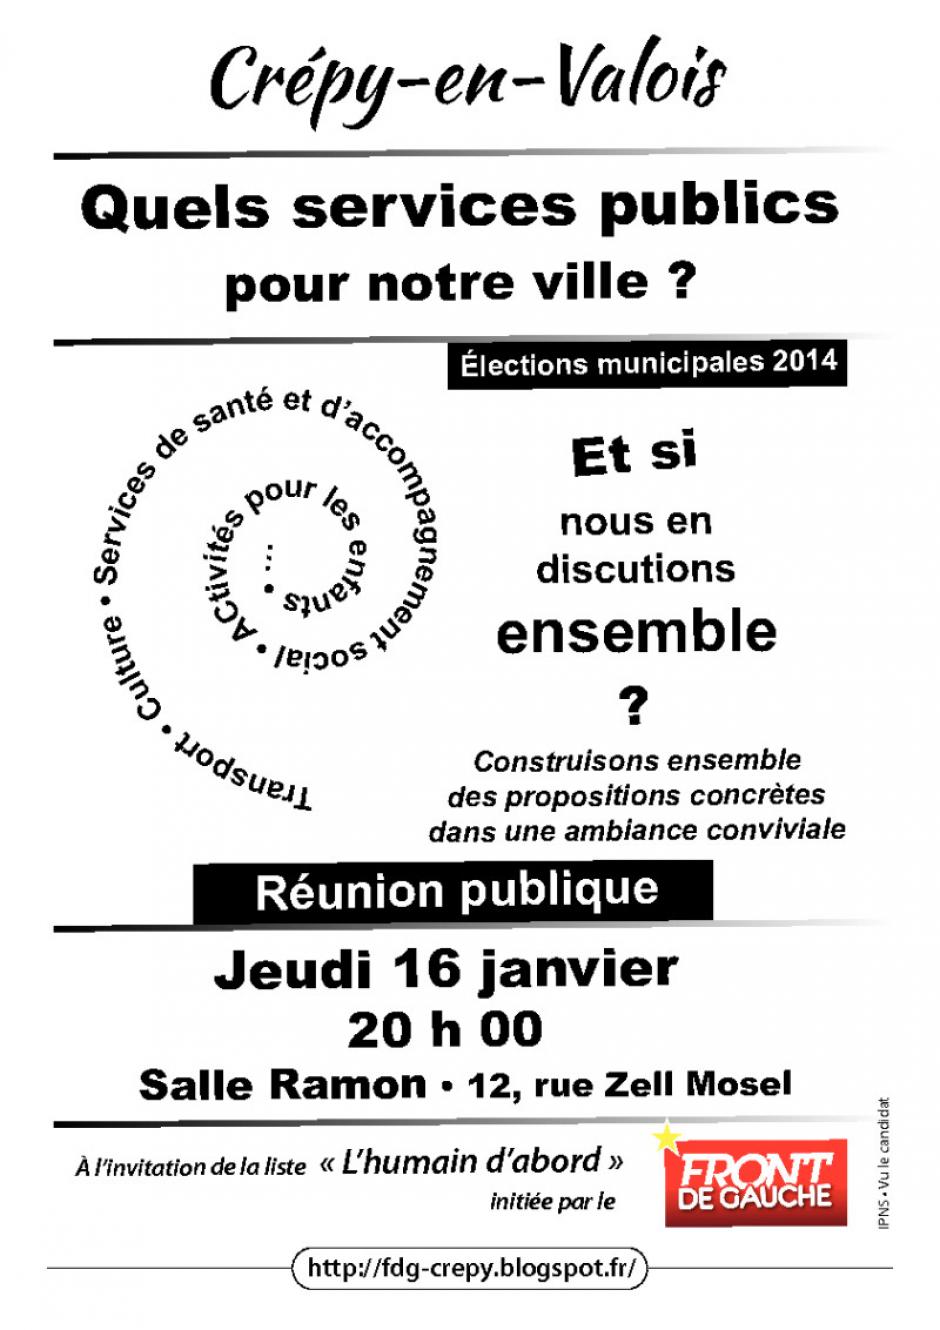 Affichette de campagne de la liste « L'humain d'abord » annonçant la réunion publique du 16 janvier « Quels services publics pour Crépy ? » - Crépy-en-Valois, 3 janvier 2014